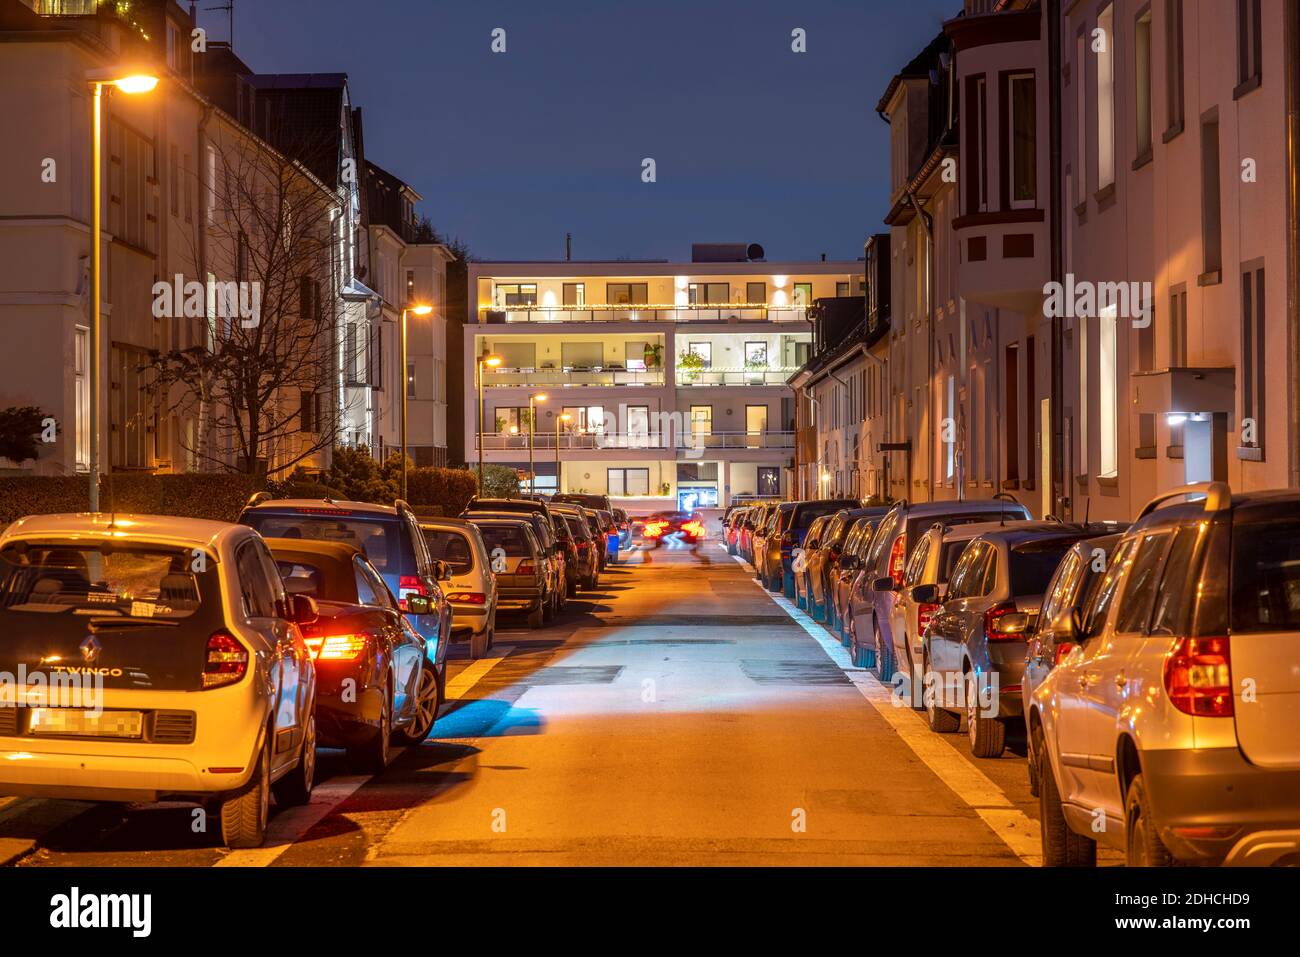 Wohnstrasse, viele Mehrfamilienhäuser in einem Wohnviertel, abends, Laternen Beleuchtung, Essen, NRW, Deutschland Foto Stock